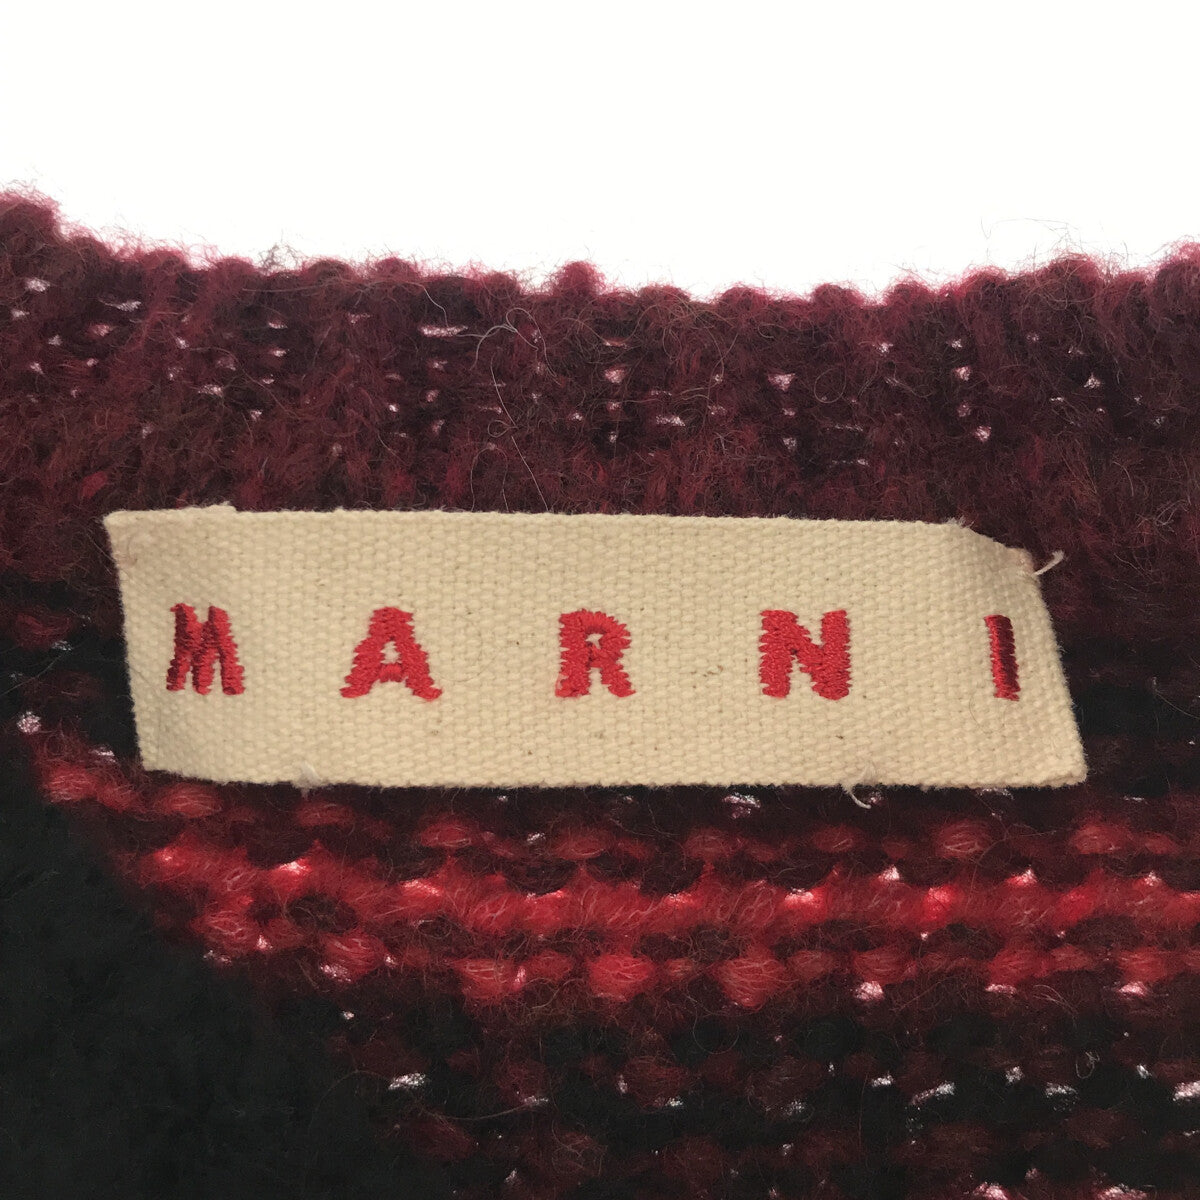 MARNI / マルニ | 2021AW | アルパカ混 クレイジーパターン ニット | 40 | レッド | レディース